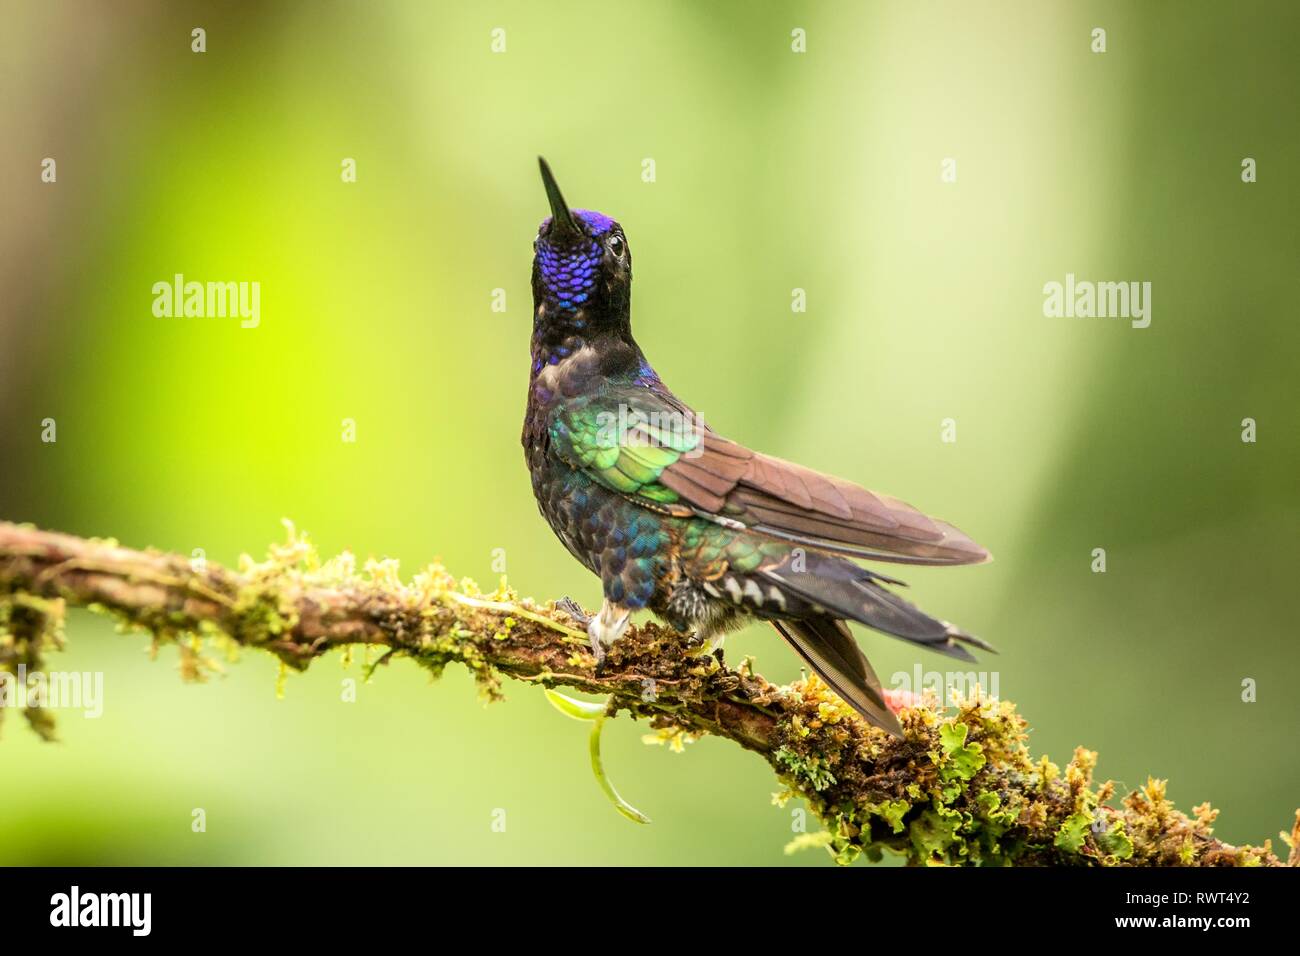 Couronne mauve assis sur branch, hummingbird de la forêt tropicale,Colombie,bird perching,petit oiseau posé sur fleur en zone claire,jardin Banque D'Images